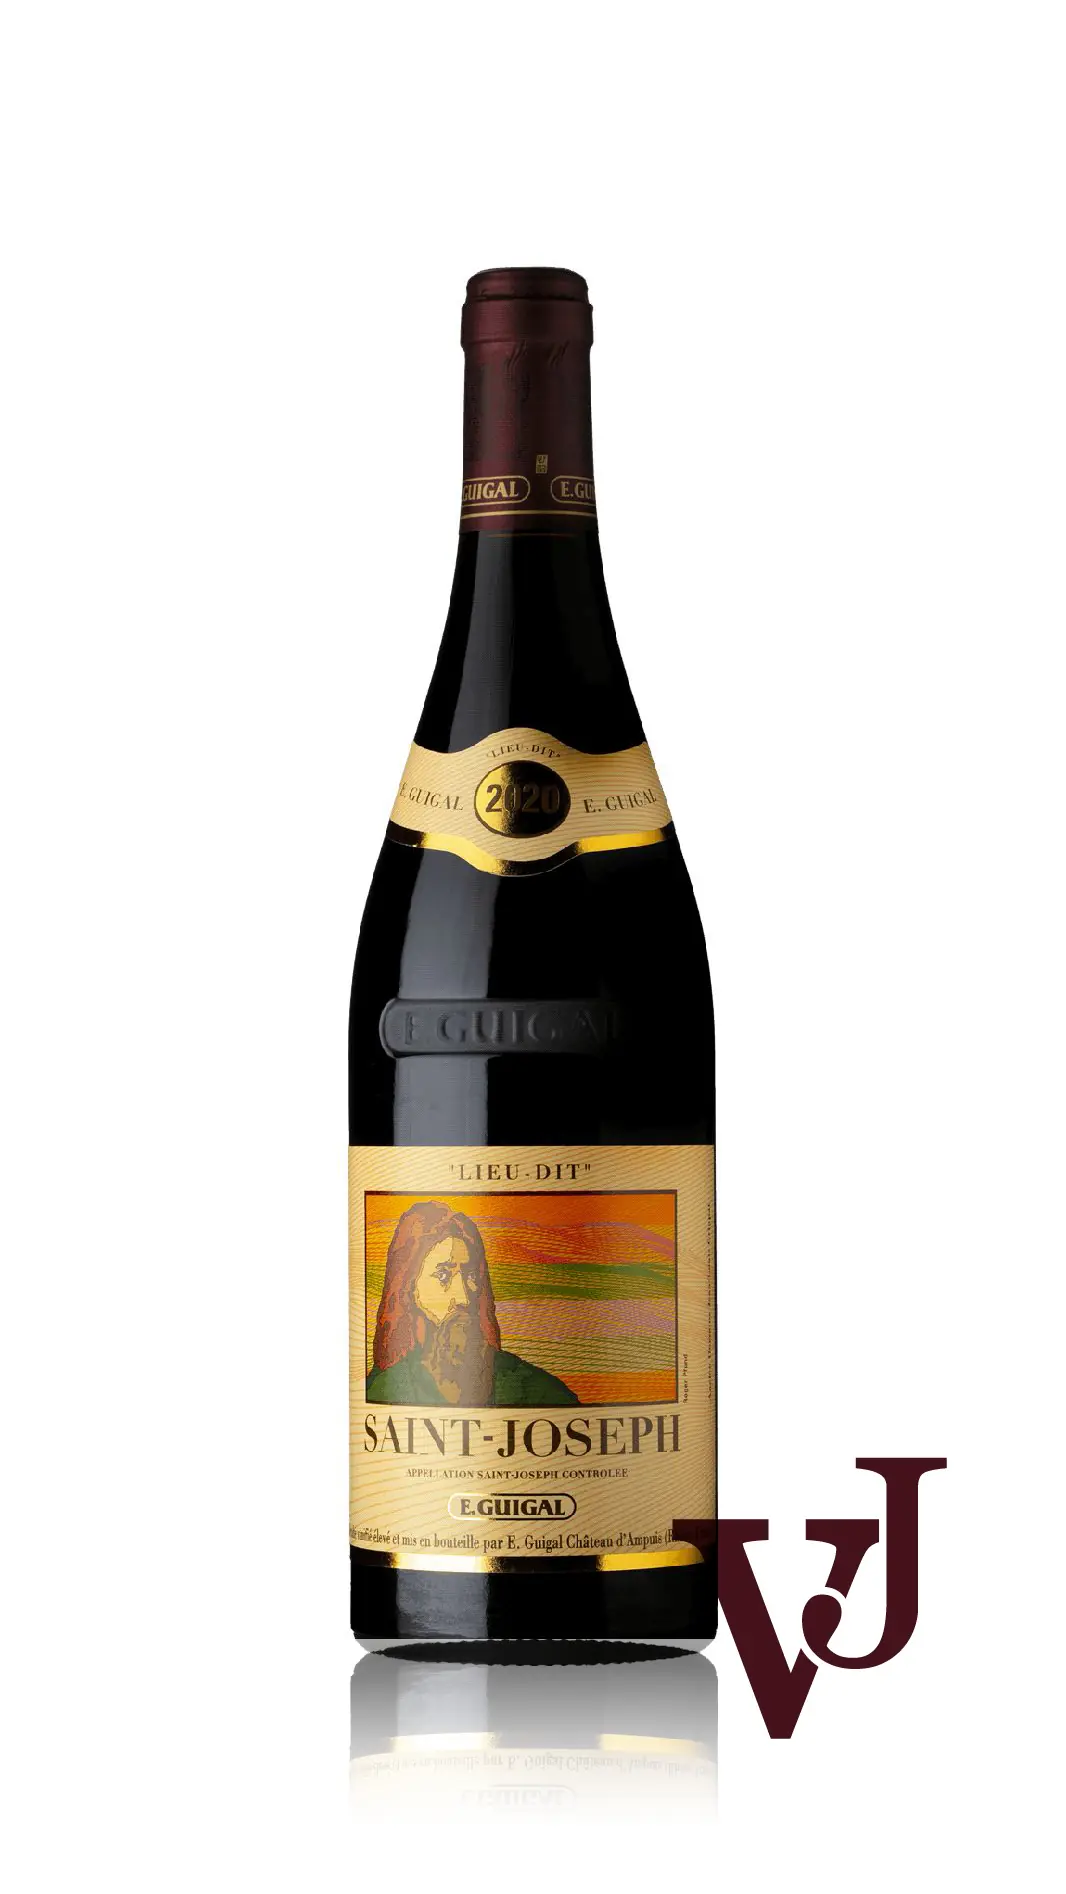 Rött Vin - Saint-Joseph Lieu Dit Rouge E. Guigal 2020 artikel nummer 9333601 från producenten E Guigal från Frankrike - Vinjournalen.se